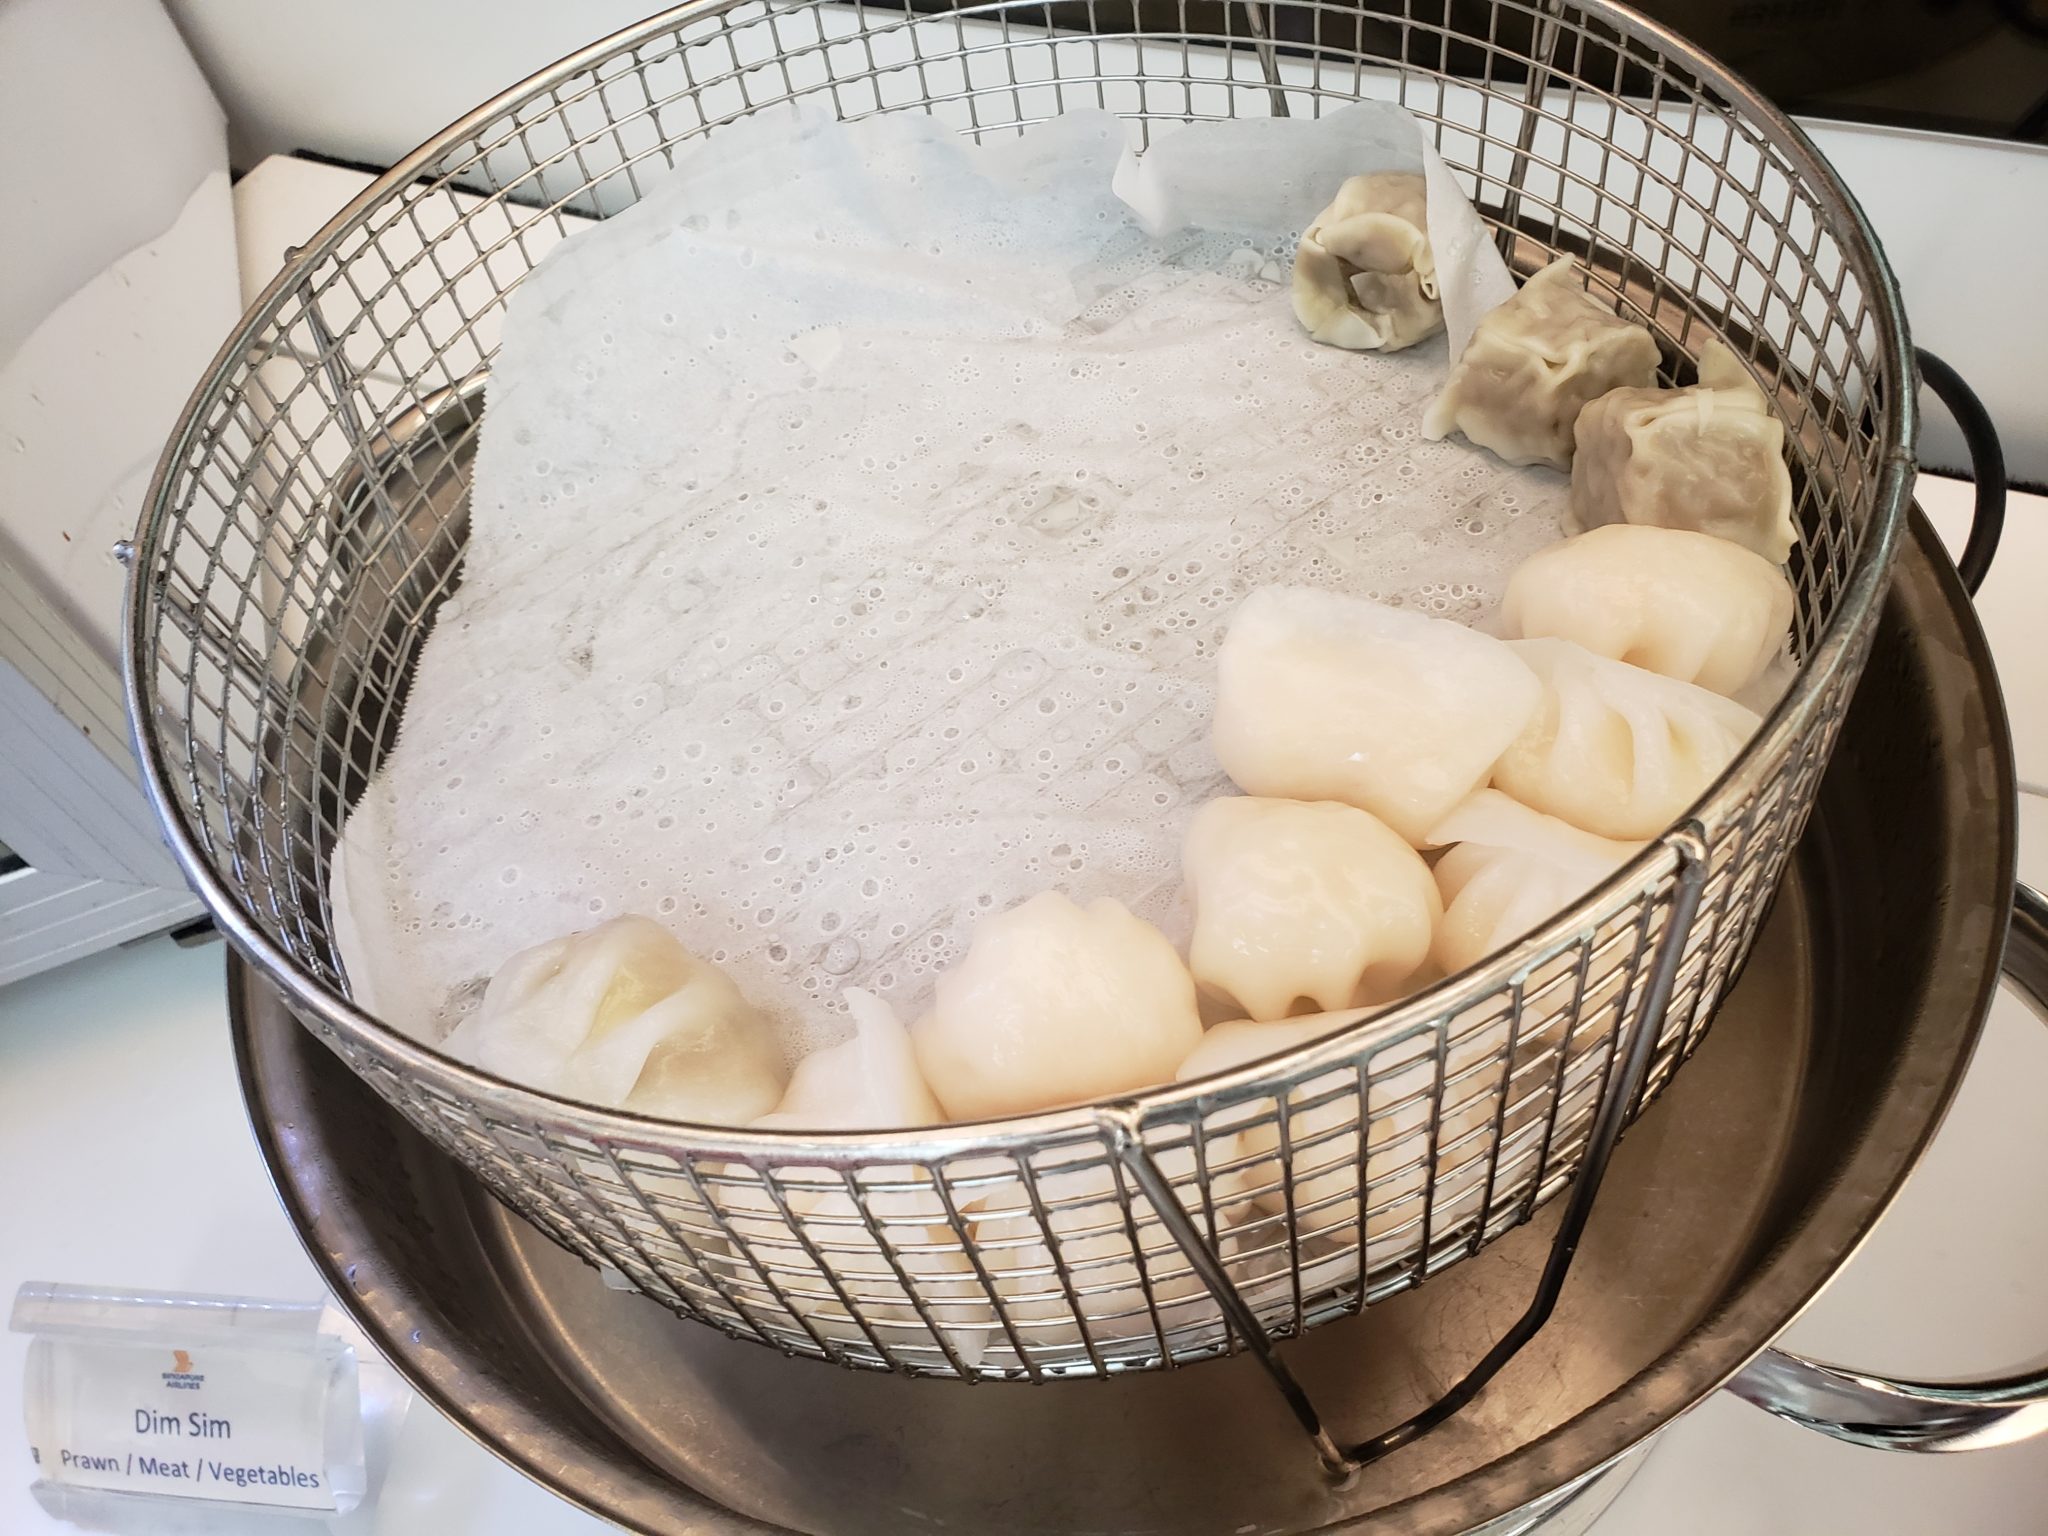 a basket of dumplings in a frying pan